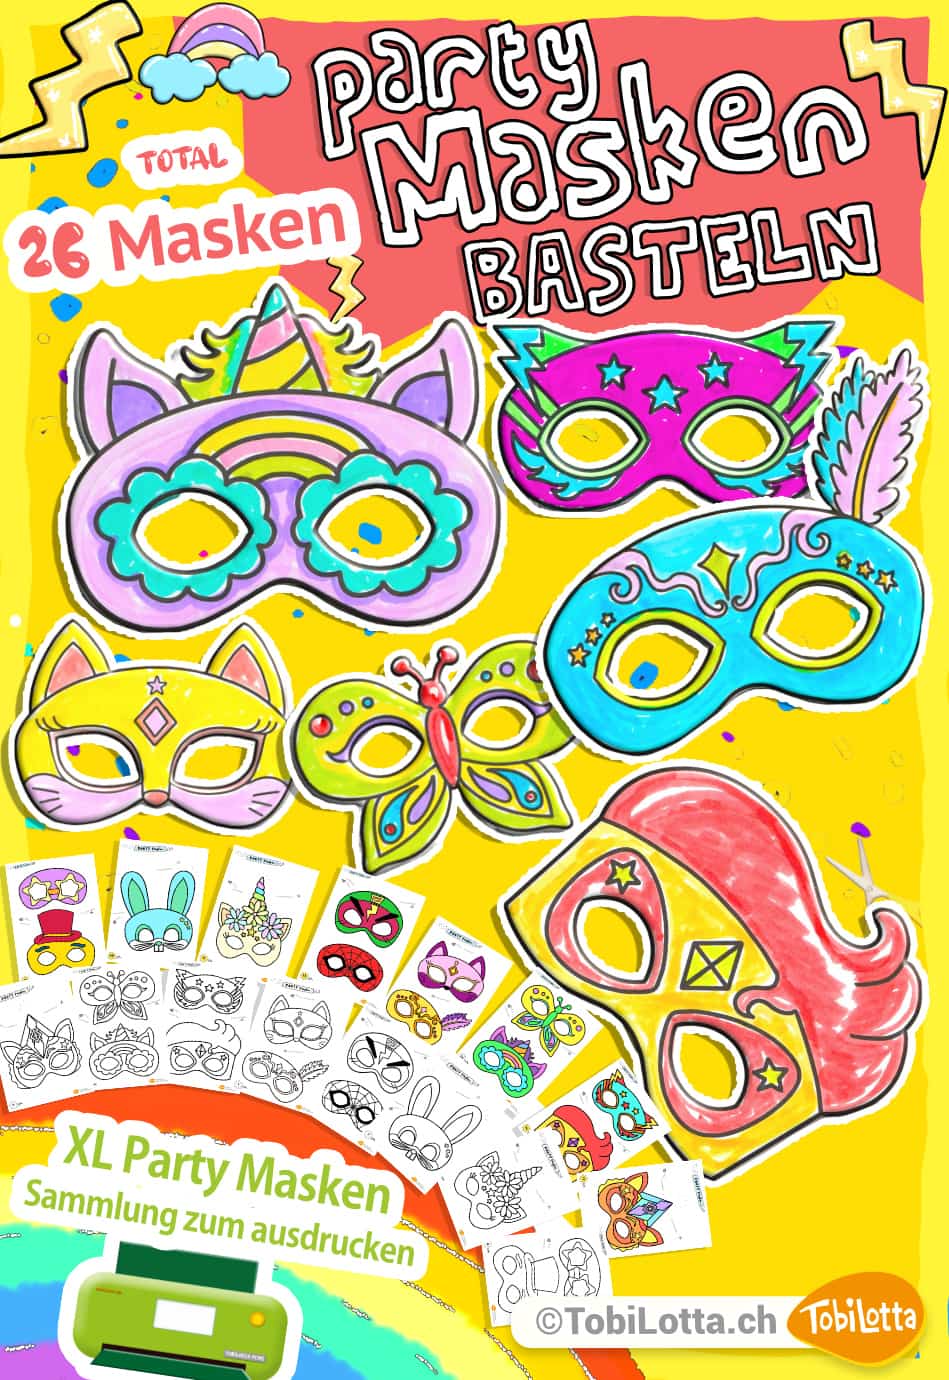 Party-Masken-basteln-fuer-Kinder-Bastelvorlage-zum-ausdrucken-masken-basteln-mit-kindern-vorlage-gratis-ninjago-spidermen-einhorn-katze-hase-tiermasken ninjago masken zum ausdrucken spiderman maske kaufen ausdrucken basteln mit kindern diy masken selber machen maskenshop verkleidung kaufen silvester masken ausdrucken neujahr masken fasnacht karneval diy masken für kinder basteln ausmalen vorlagen